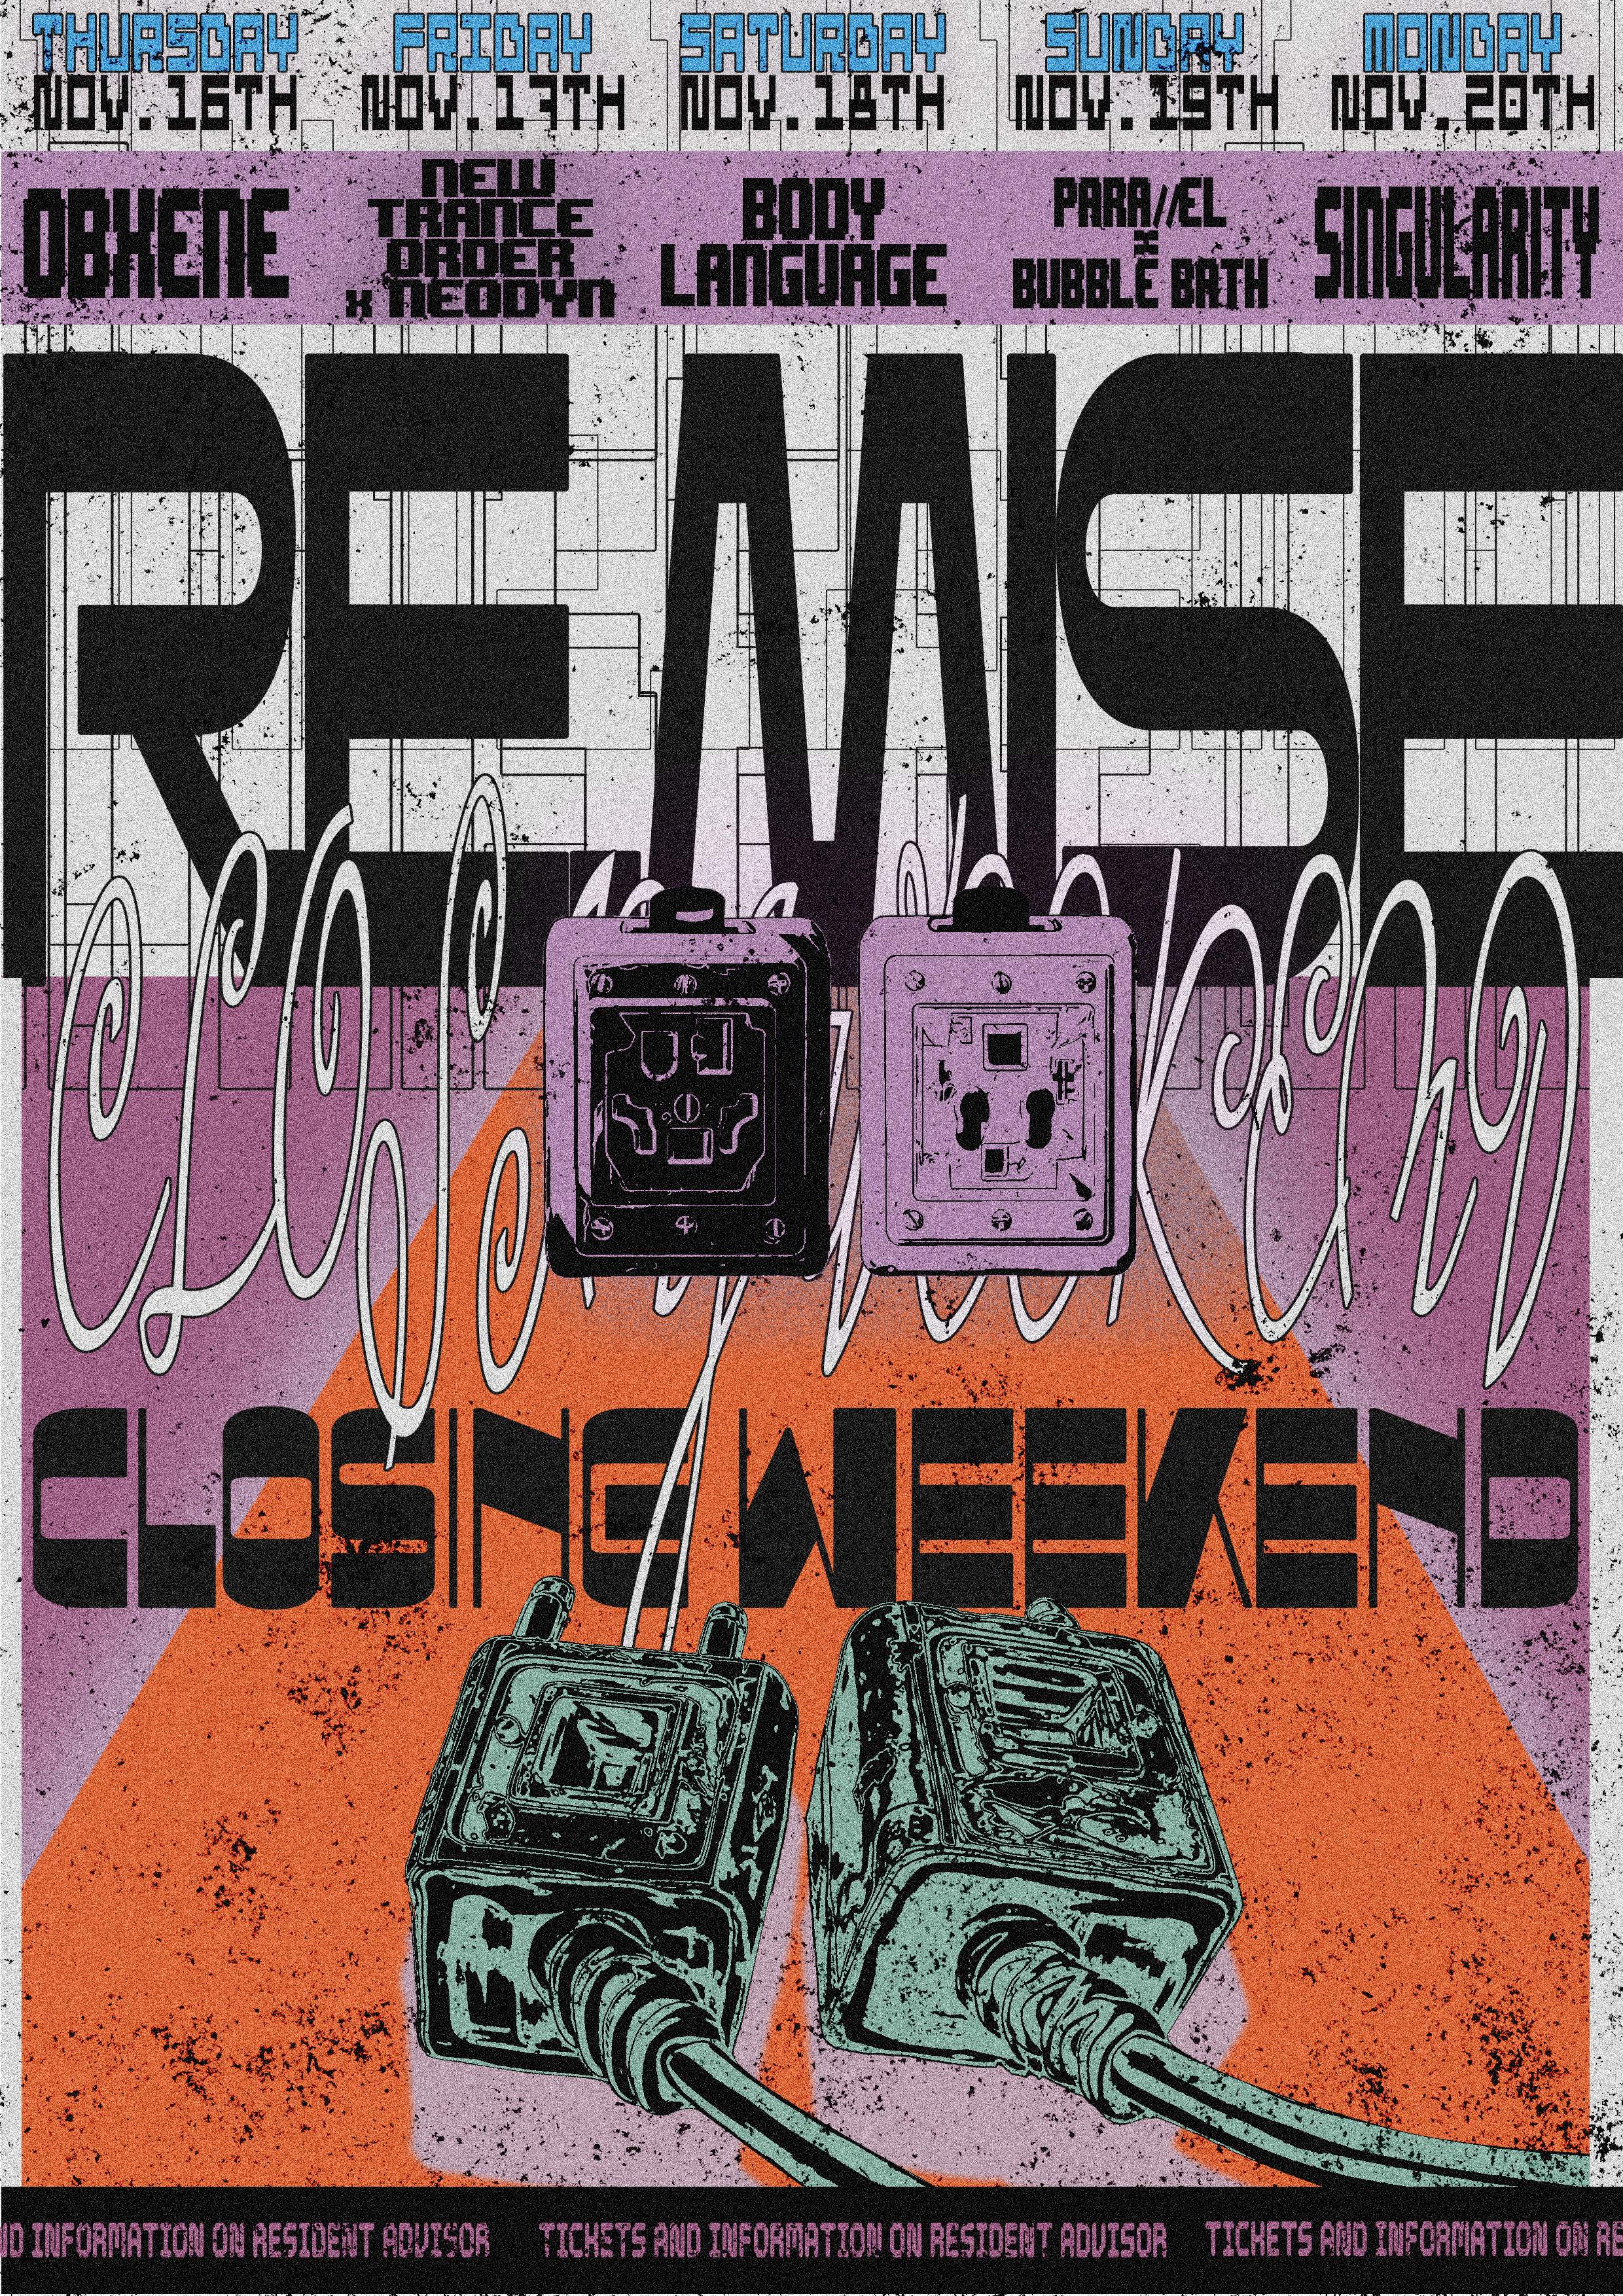 Re:mise Closing Weekend - Página frontal